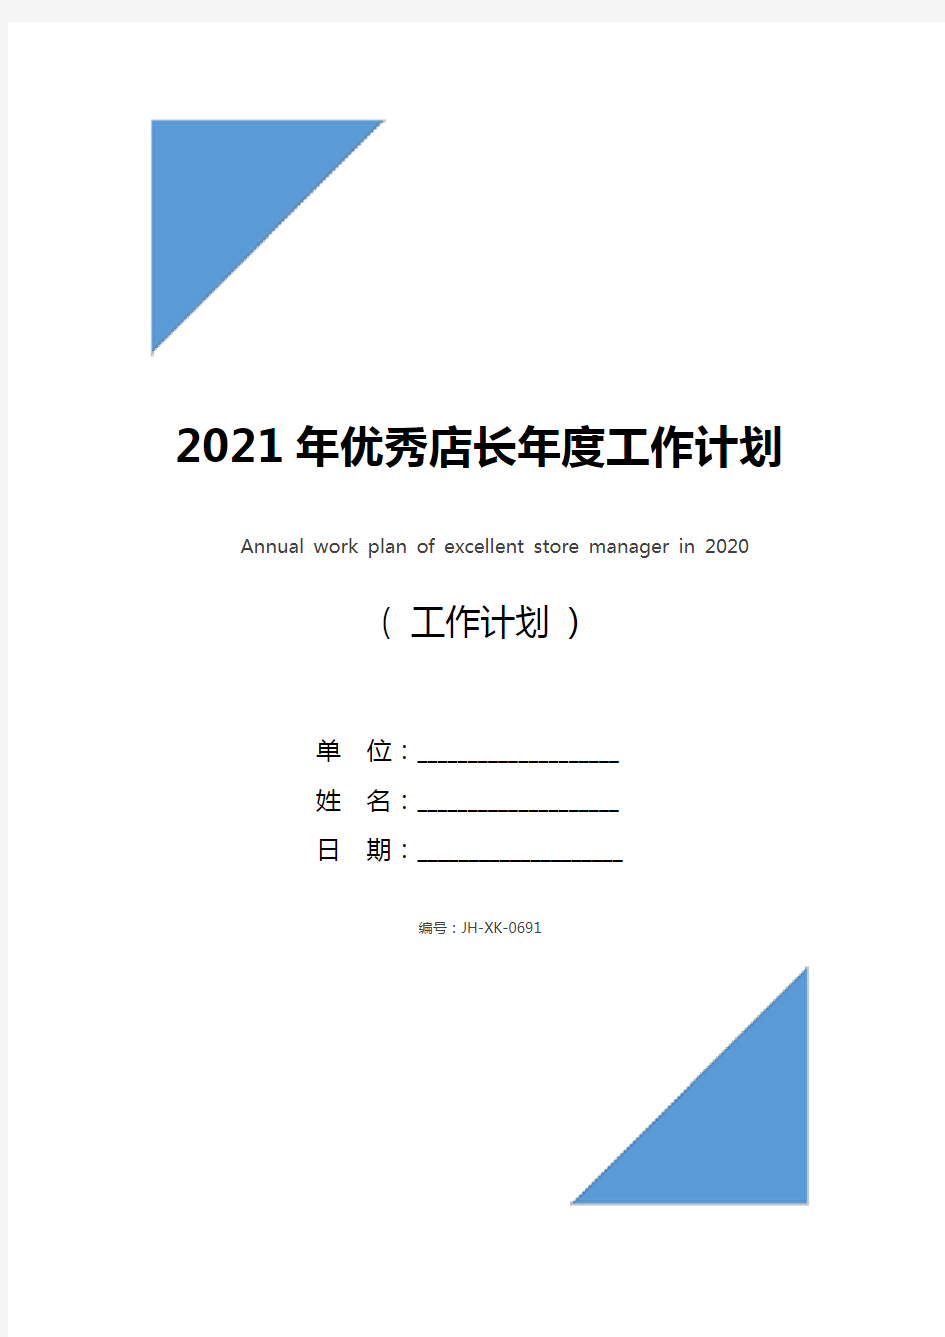 2021年优秀店长年度工作计划(最新版)